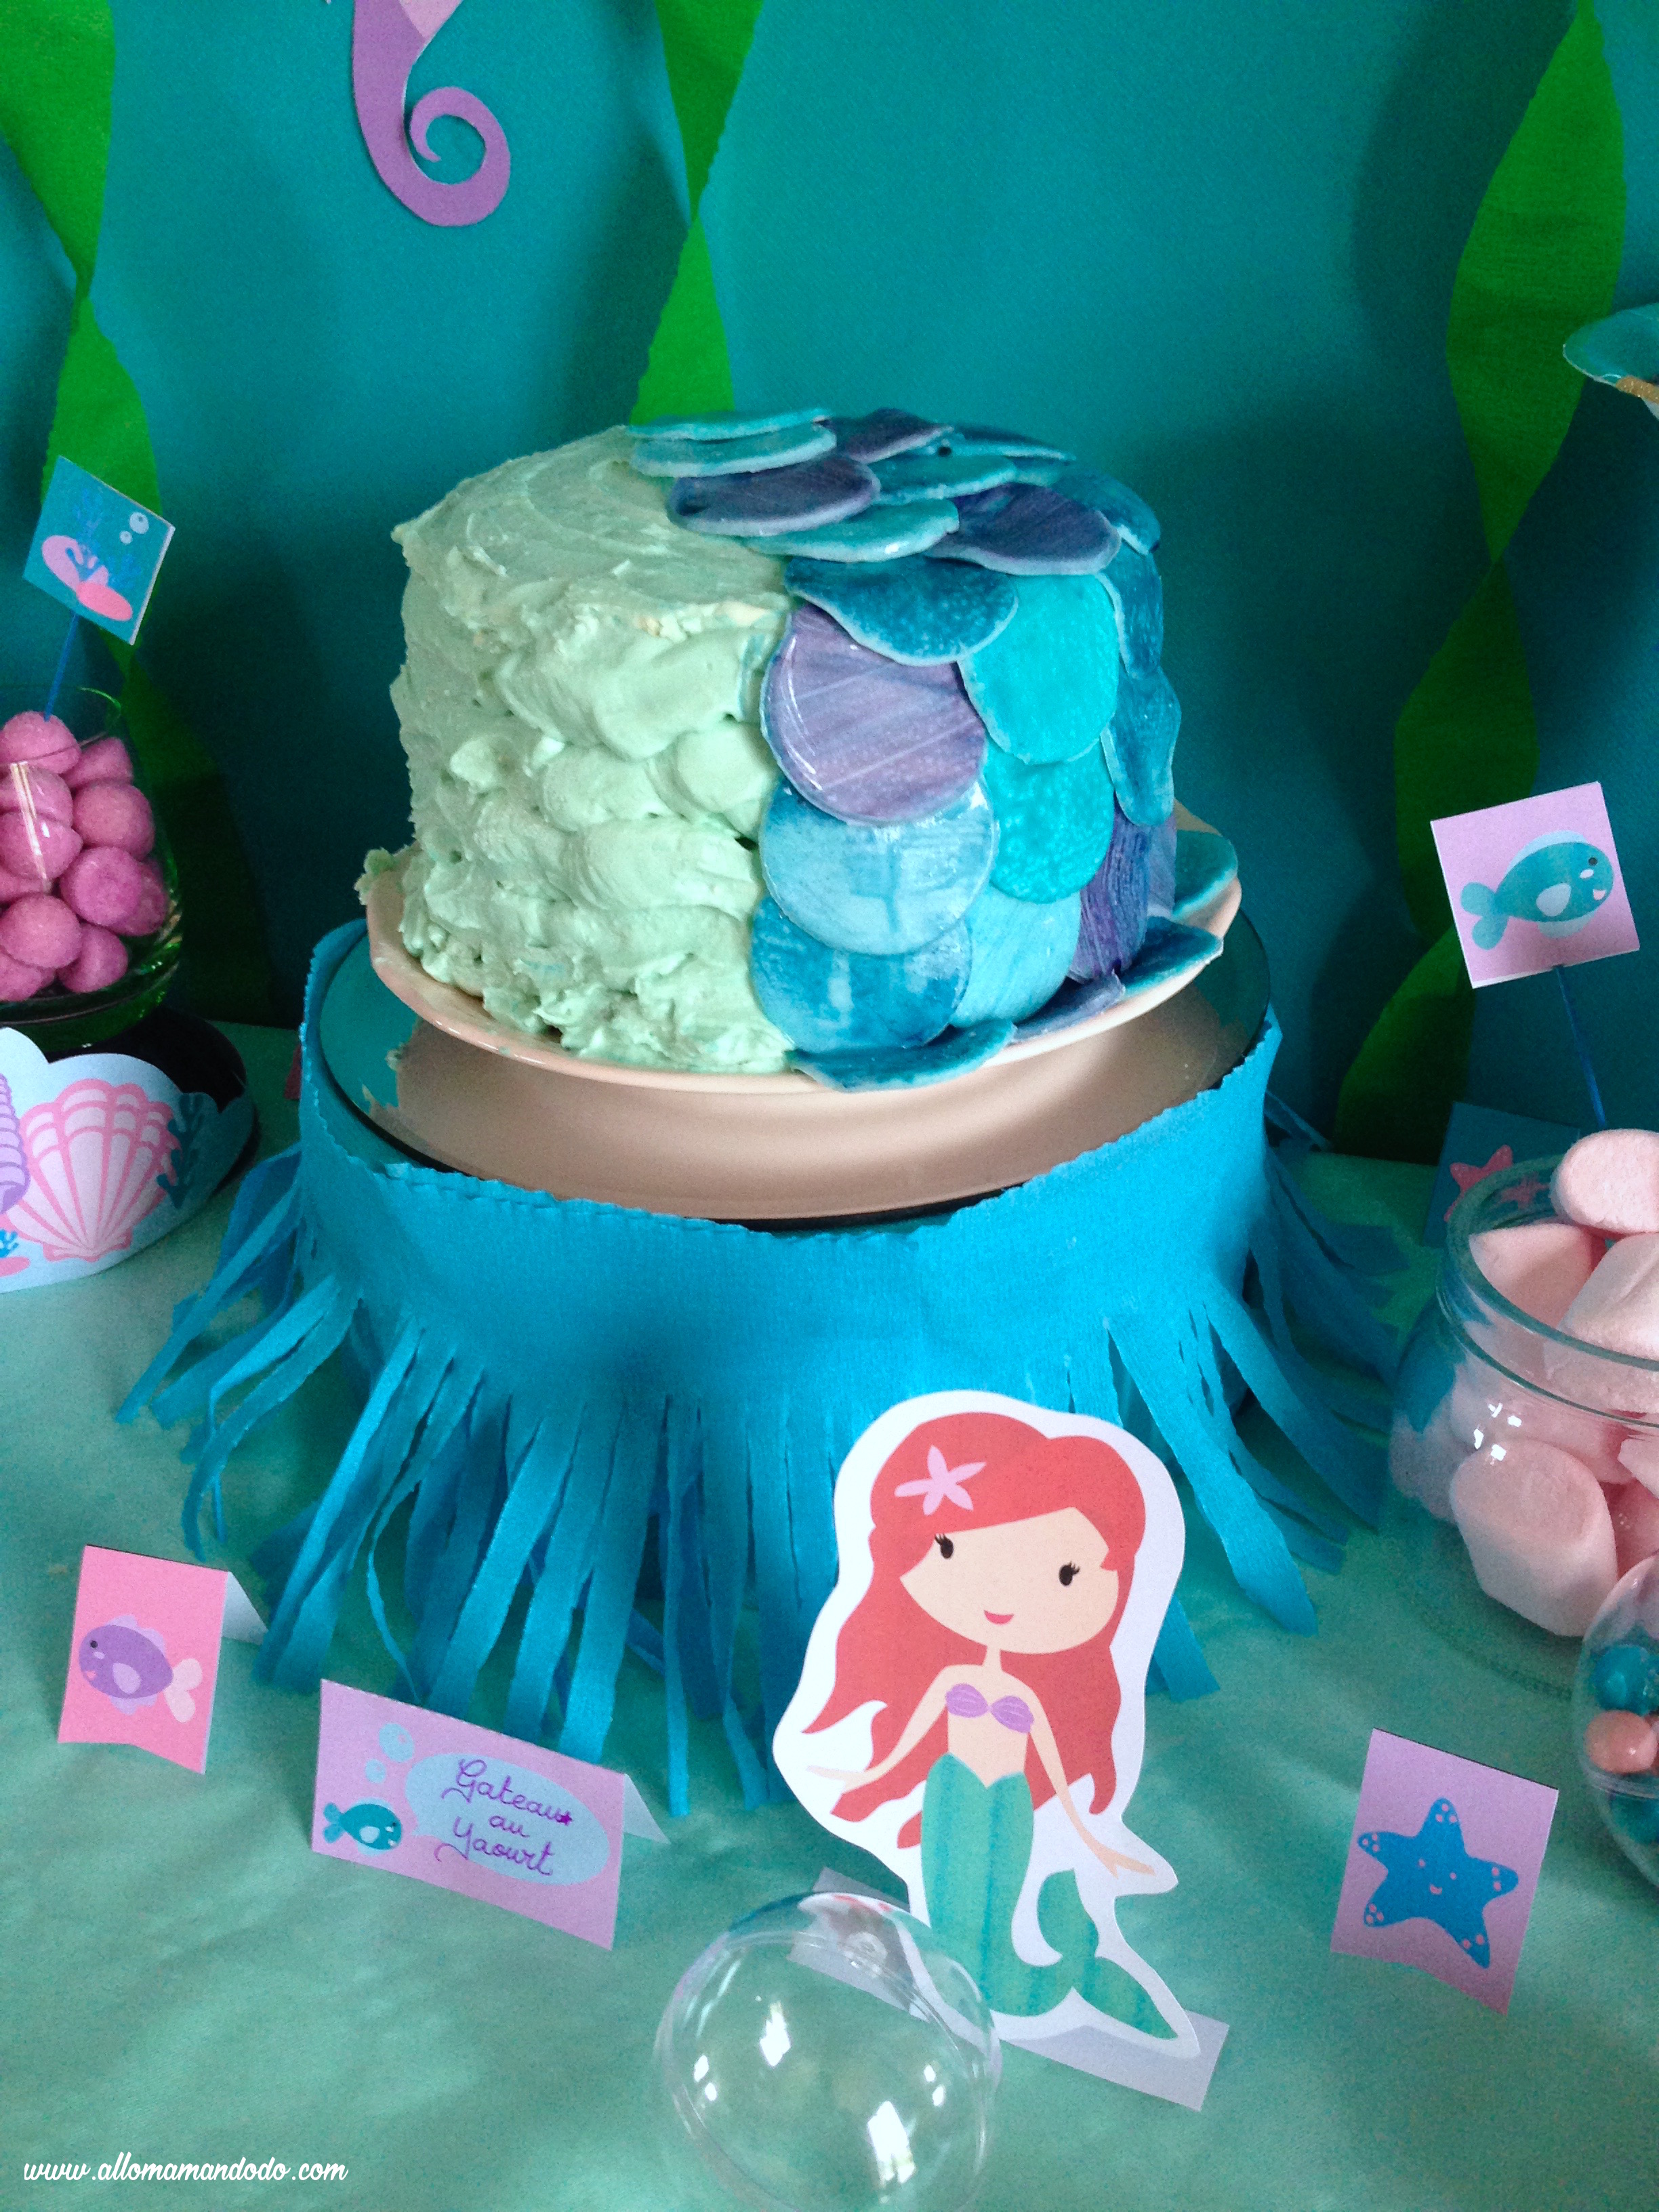 Gâteau d'anniversaire Sirène (Blog Zôdio)